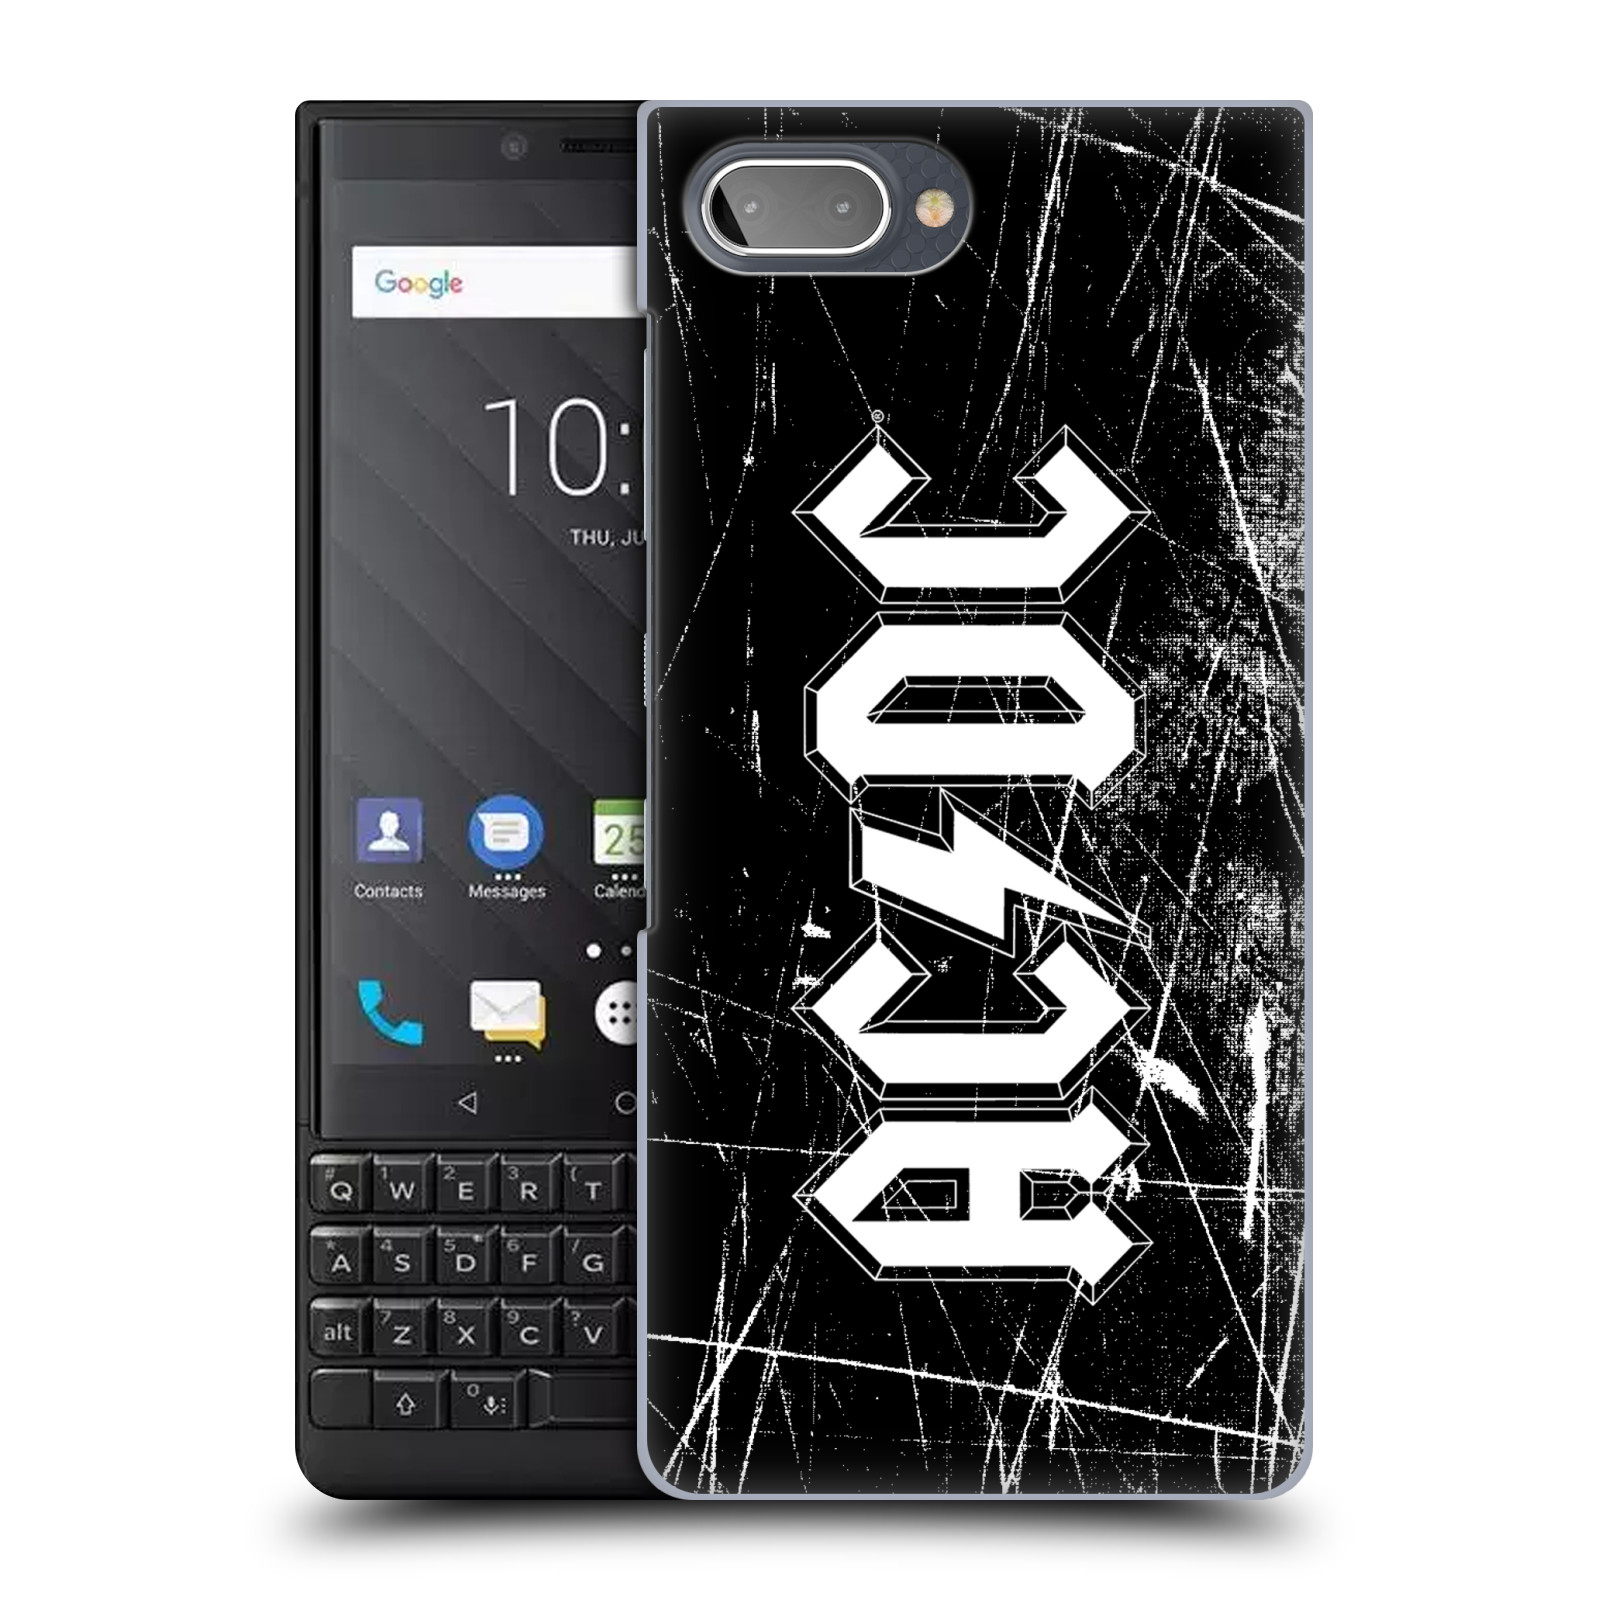 Plastové pouzdro na mobil Blackberry Key 2 - Head Case - AC/DC Černobílé logo